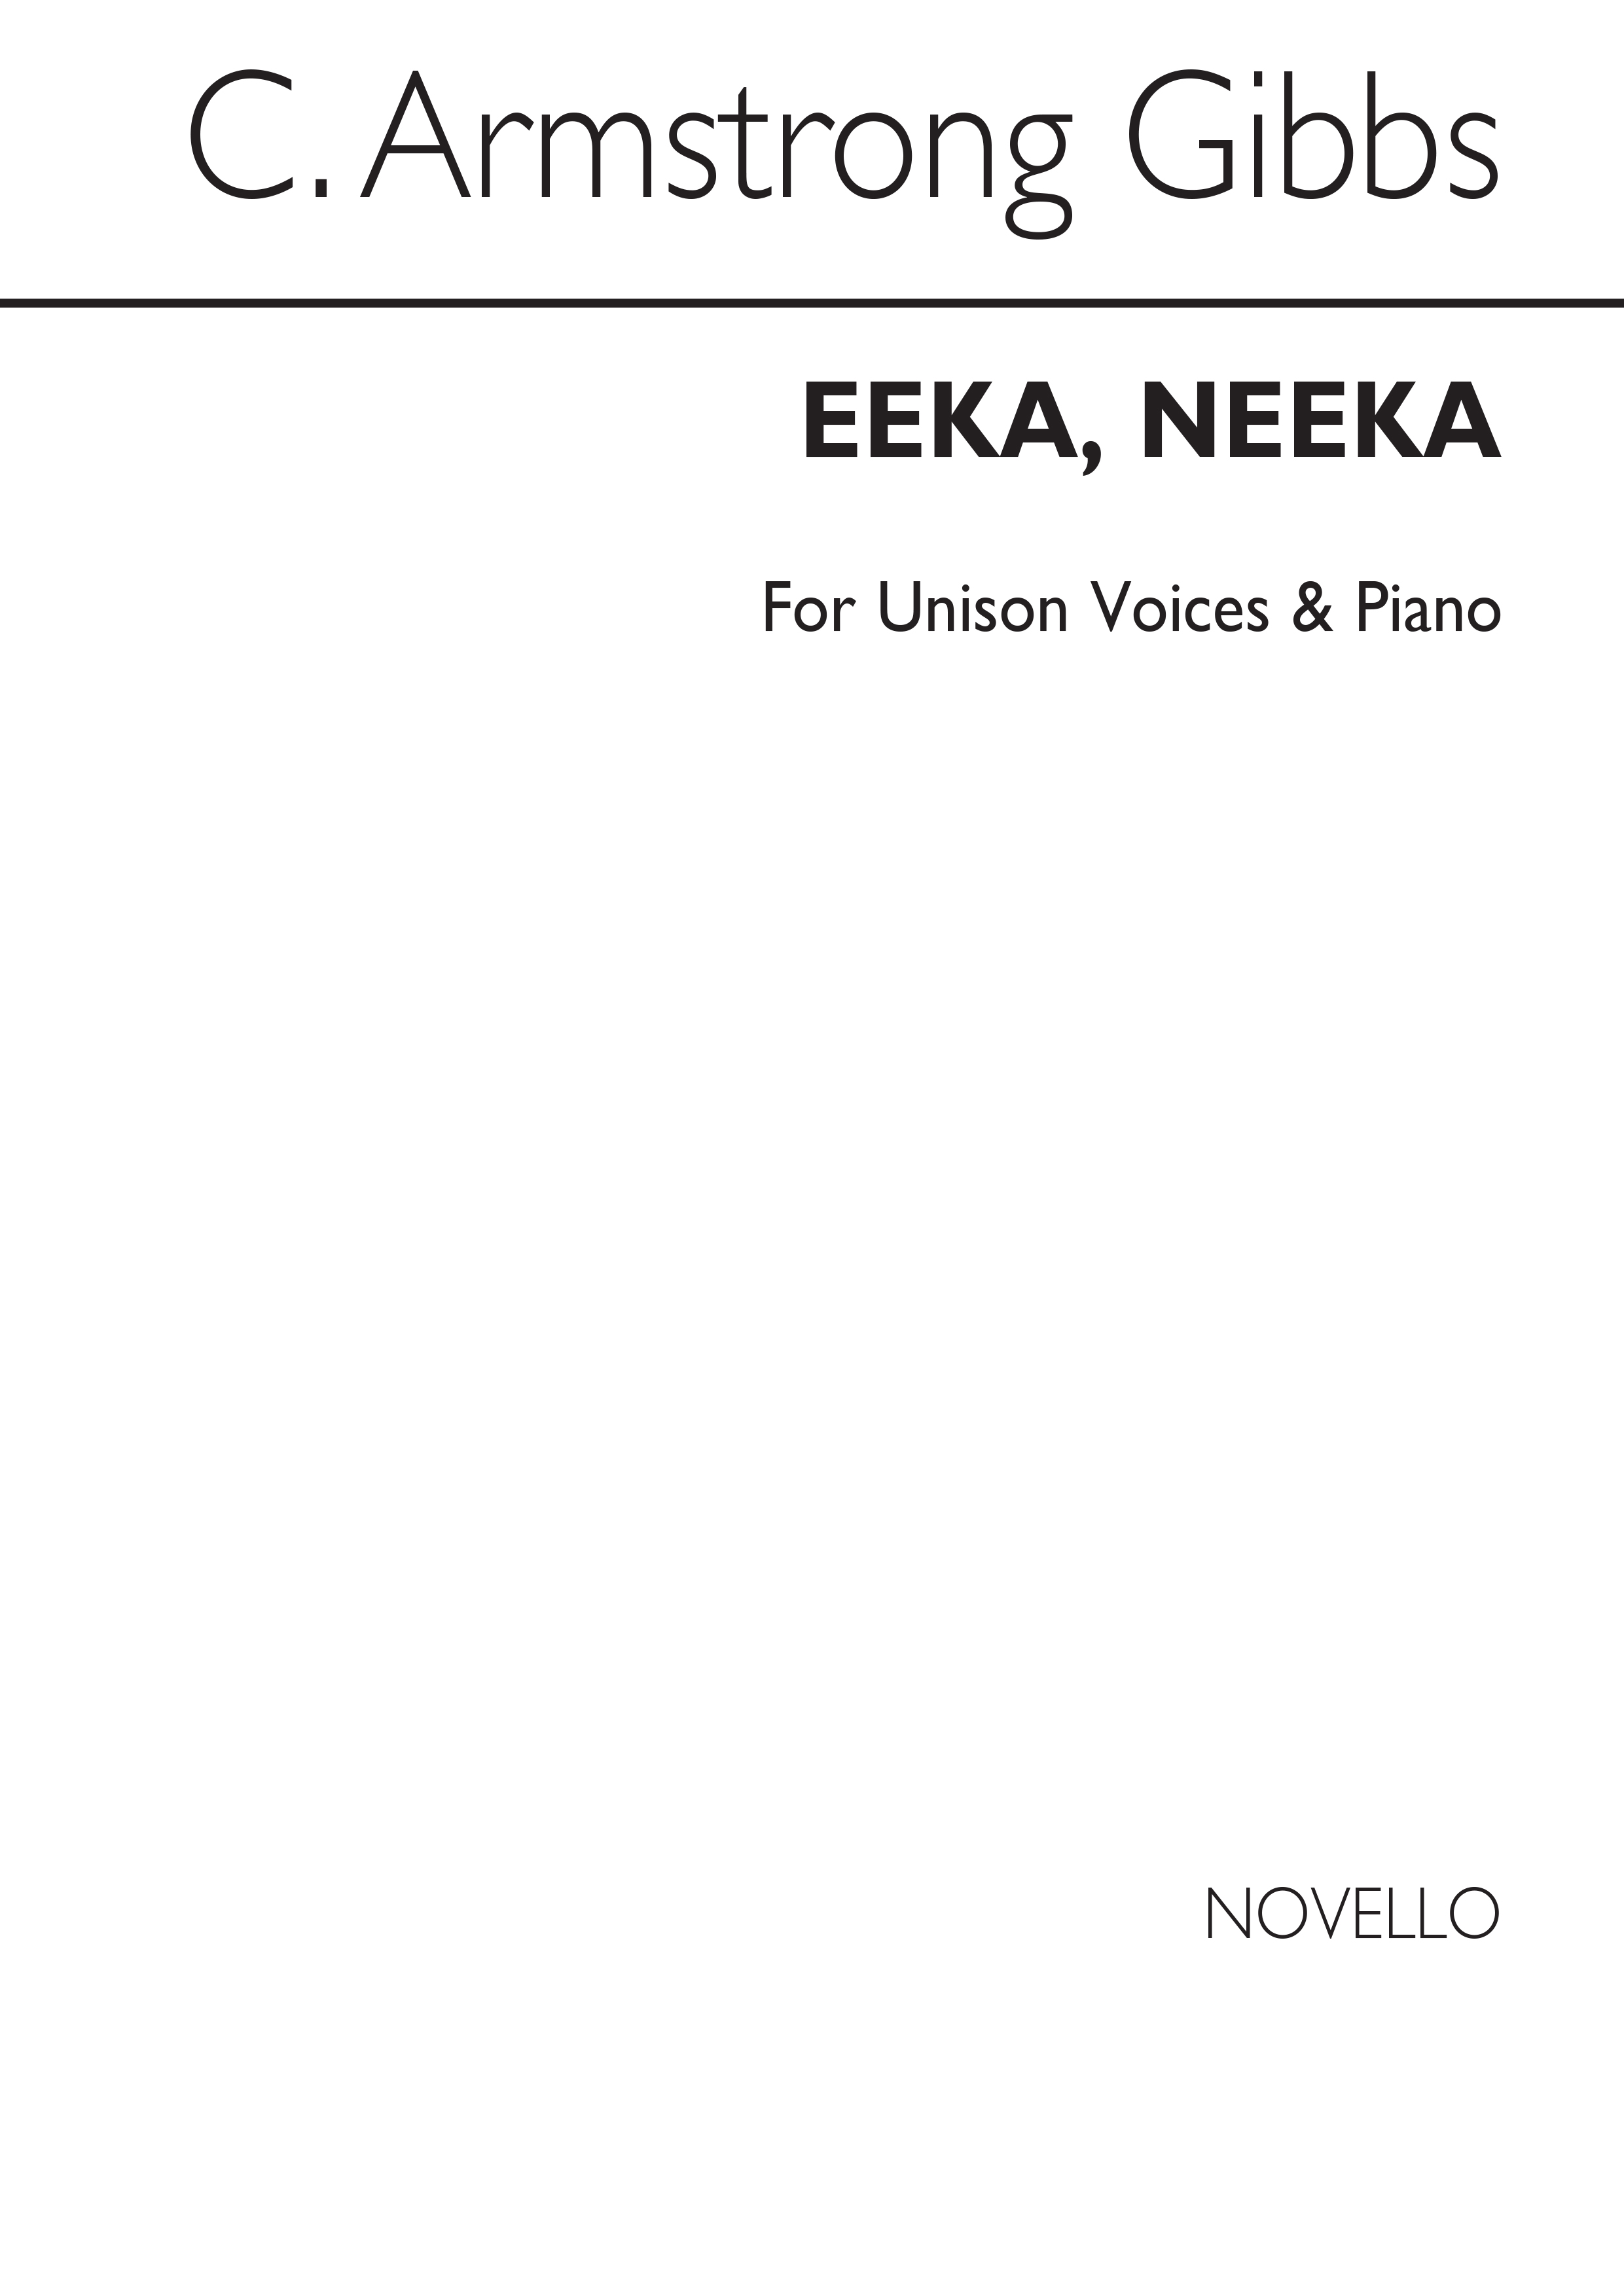 Cecil Armstrong Gibbs: Neeka Piano: Voice: Vocal Score